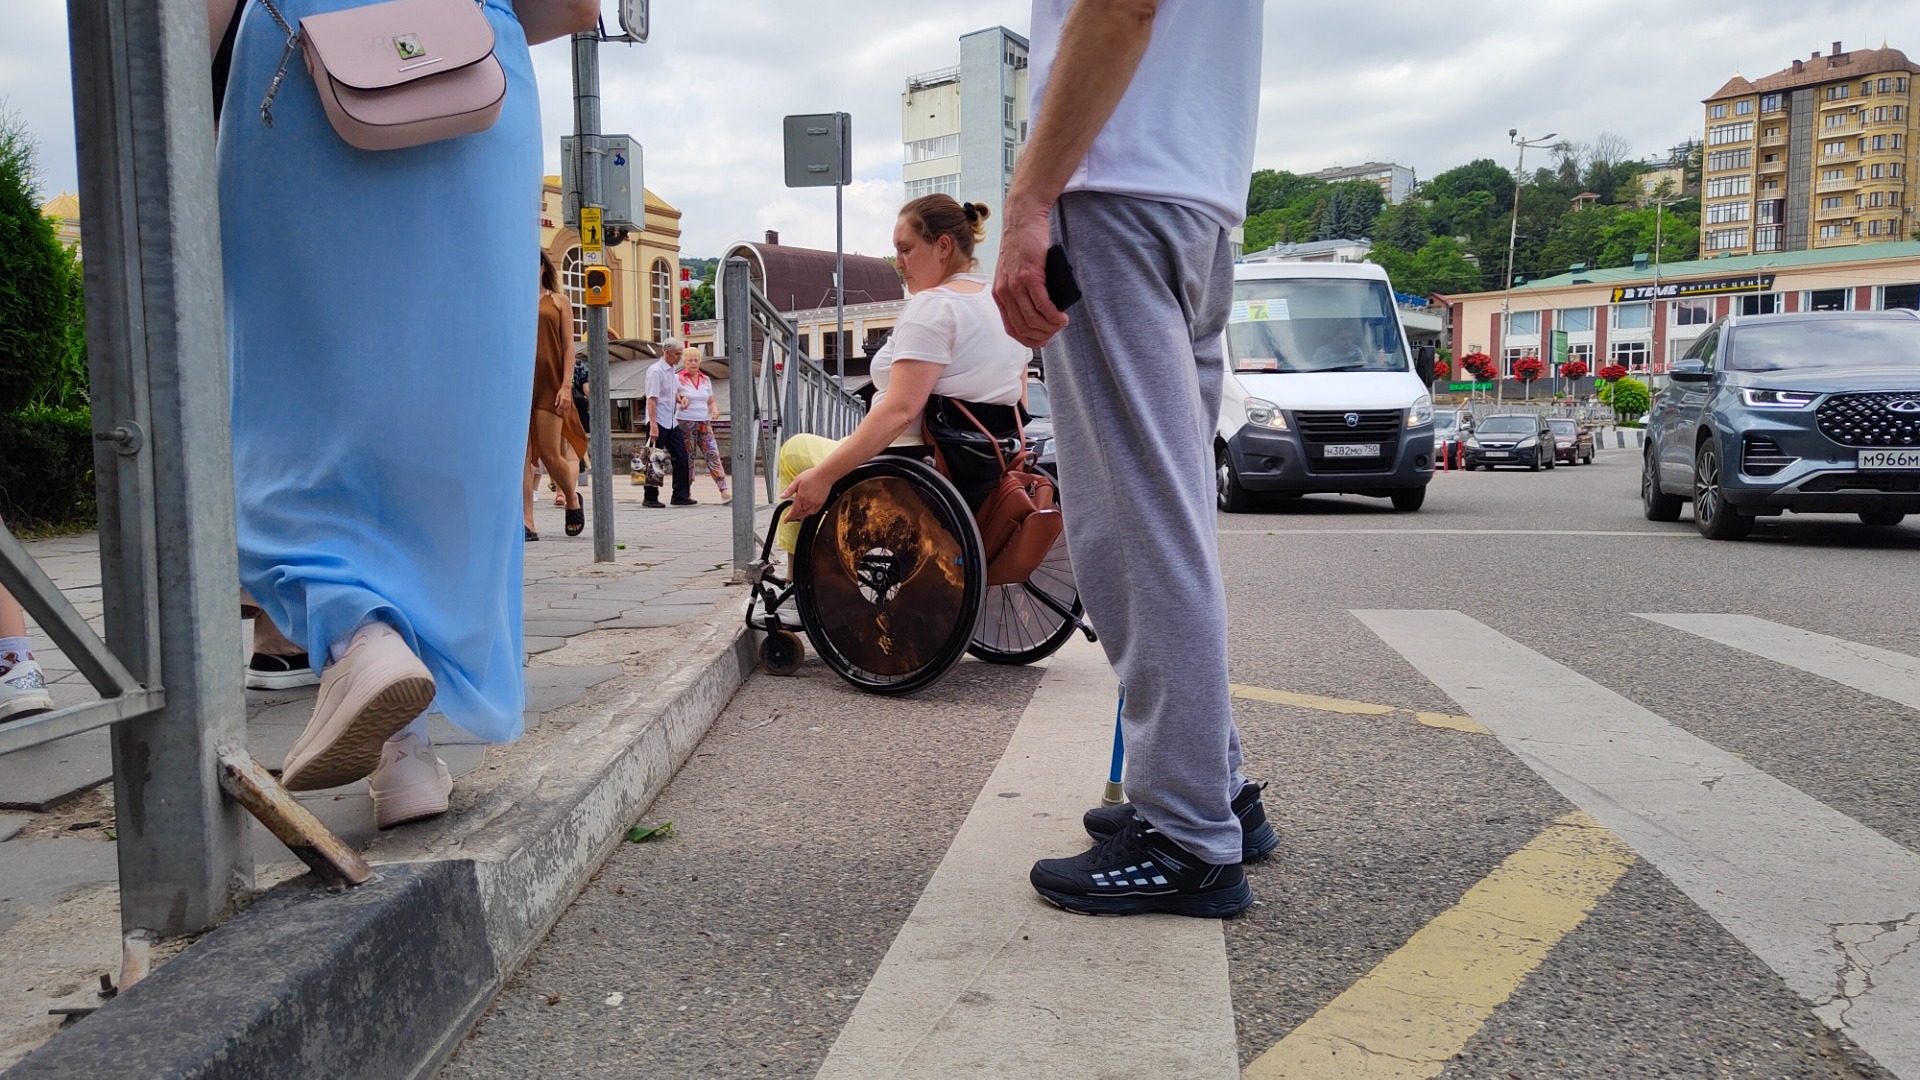 Мэрия Кисловодска проигнорировала проблемы инвалидов